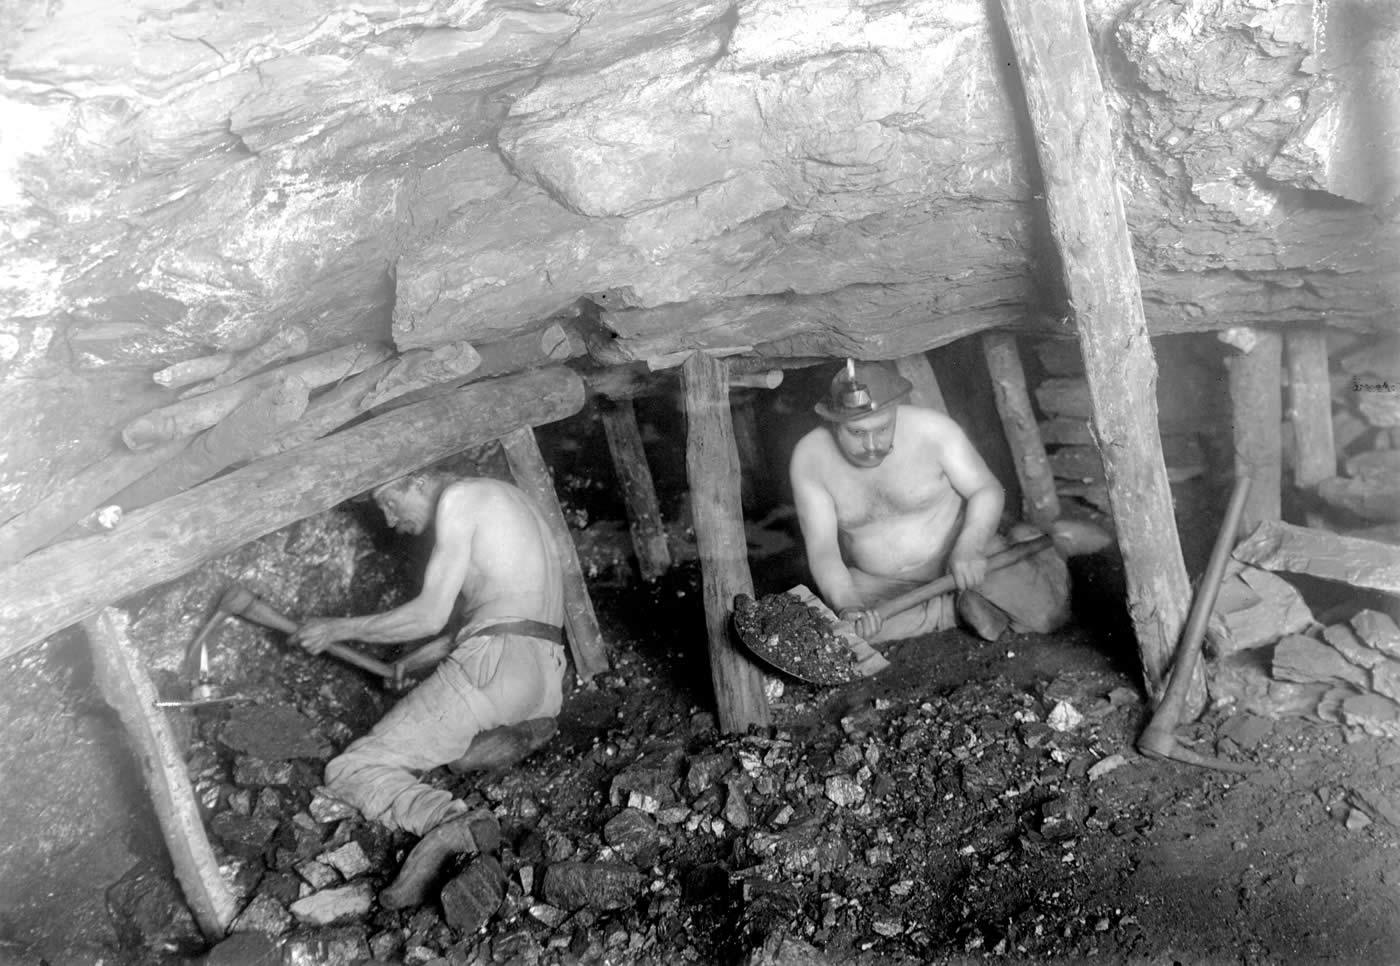 Mineurs de fond procédant à l’abattage du charbon.